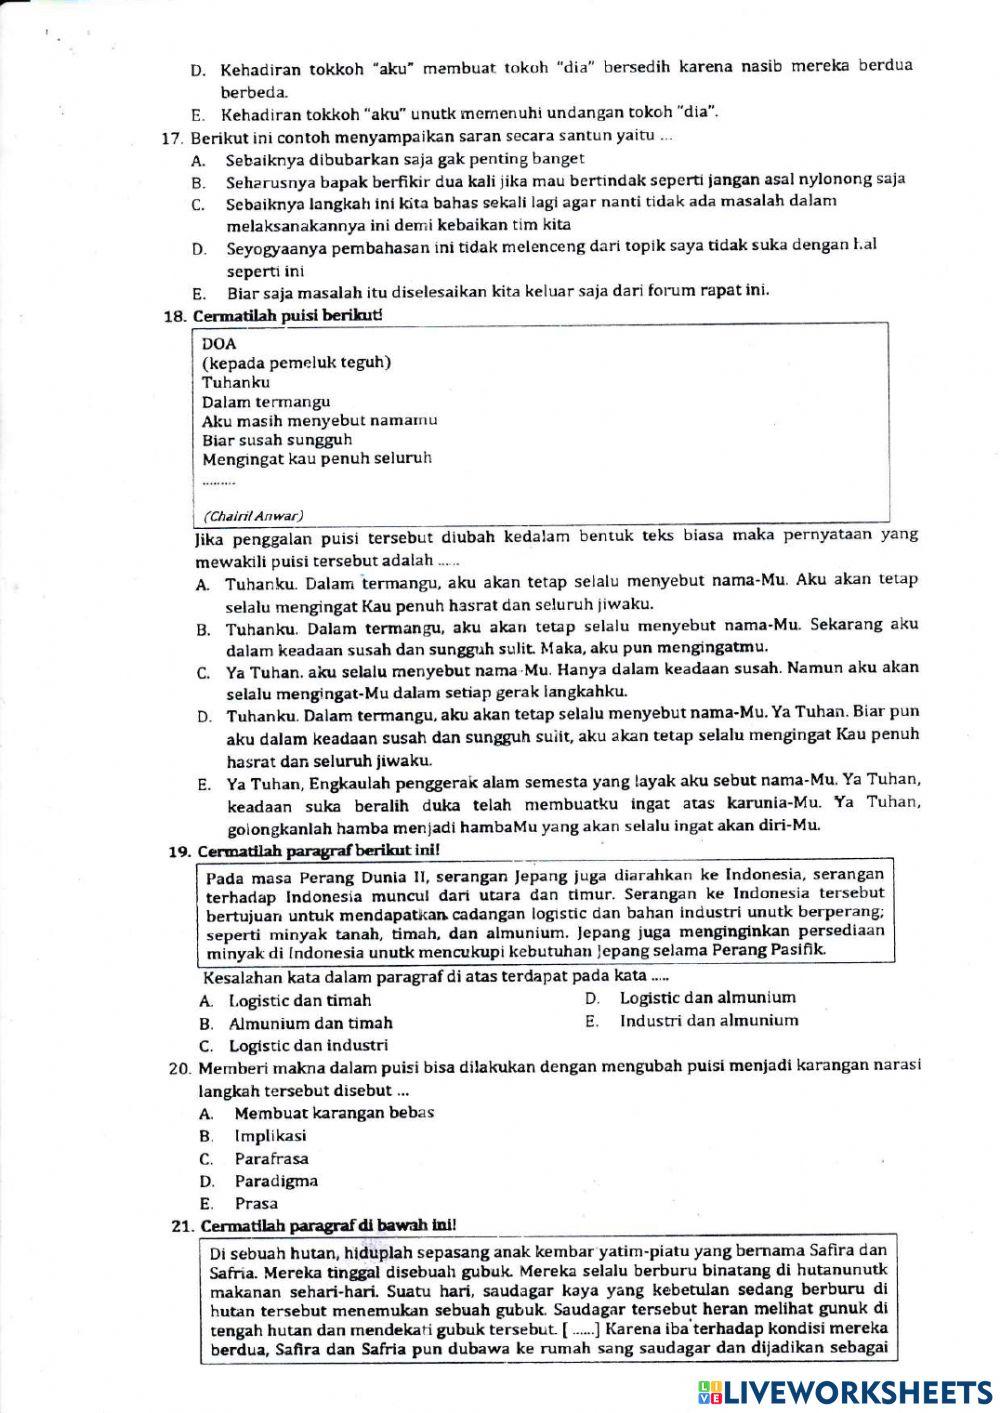 UPK Bahasa Indonesia 22